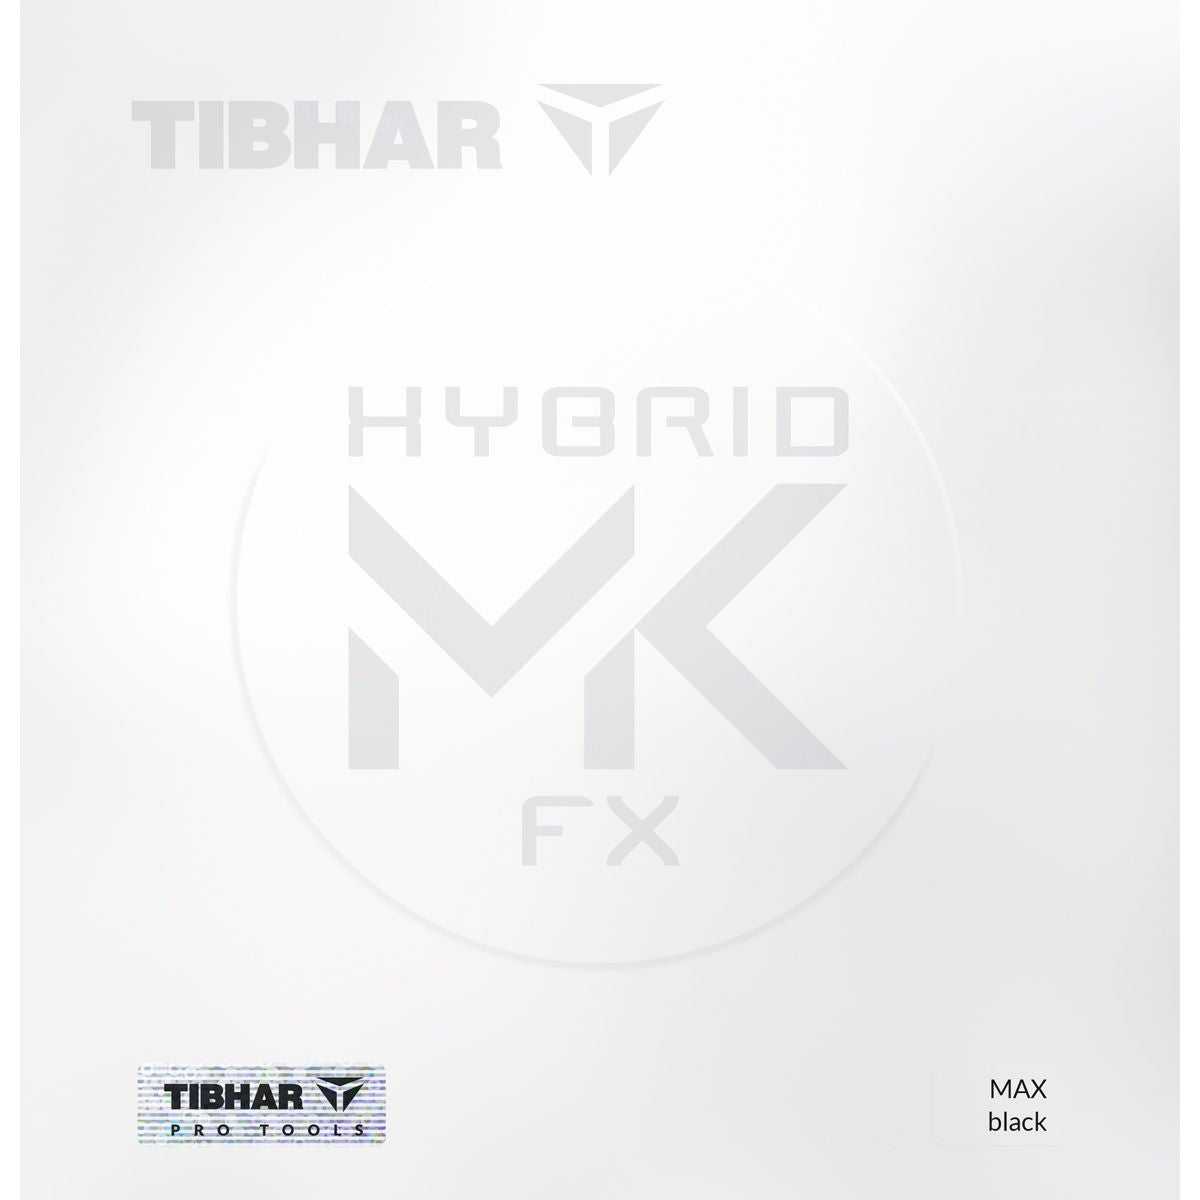 TIBHAR HYBRID MK FX - Table Tennis Rubber